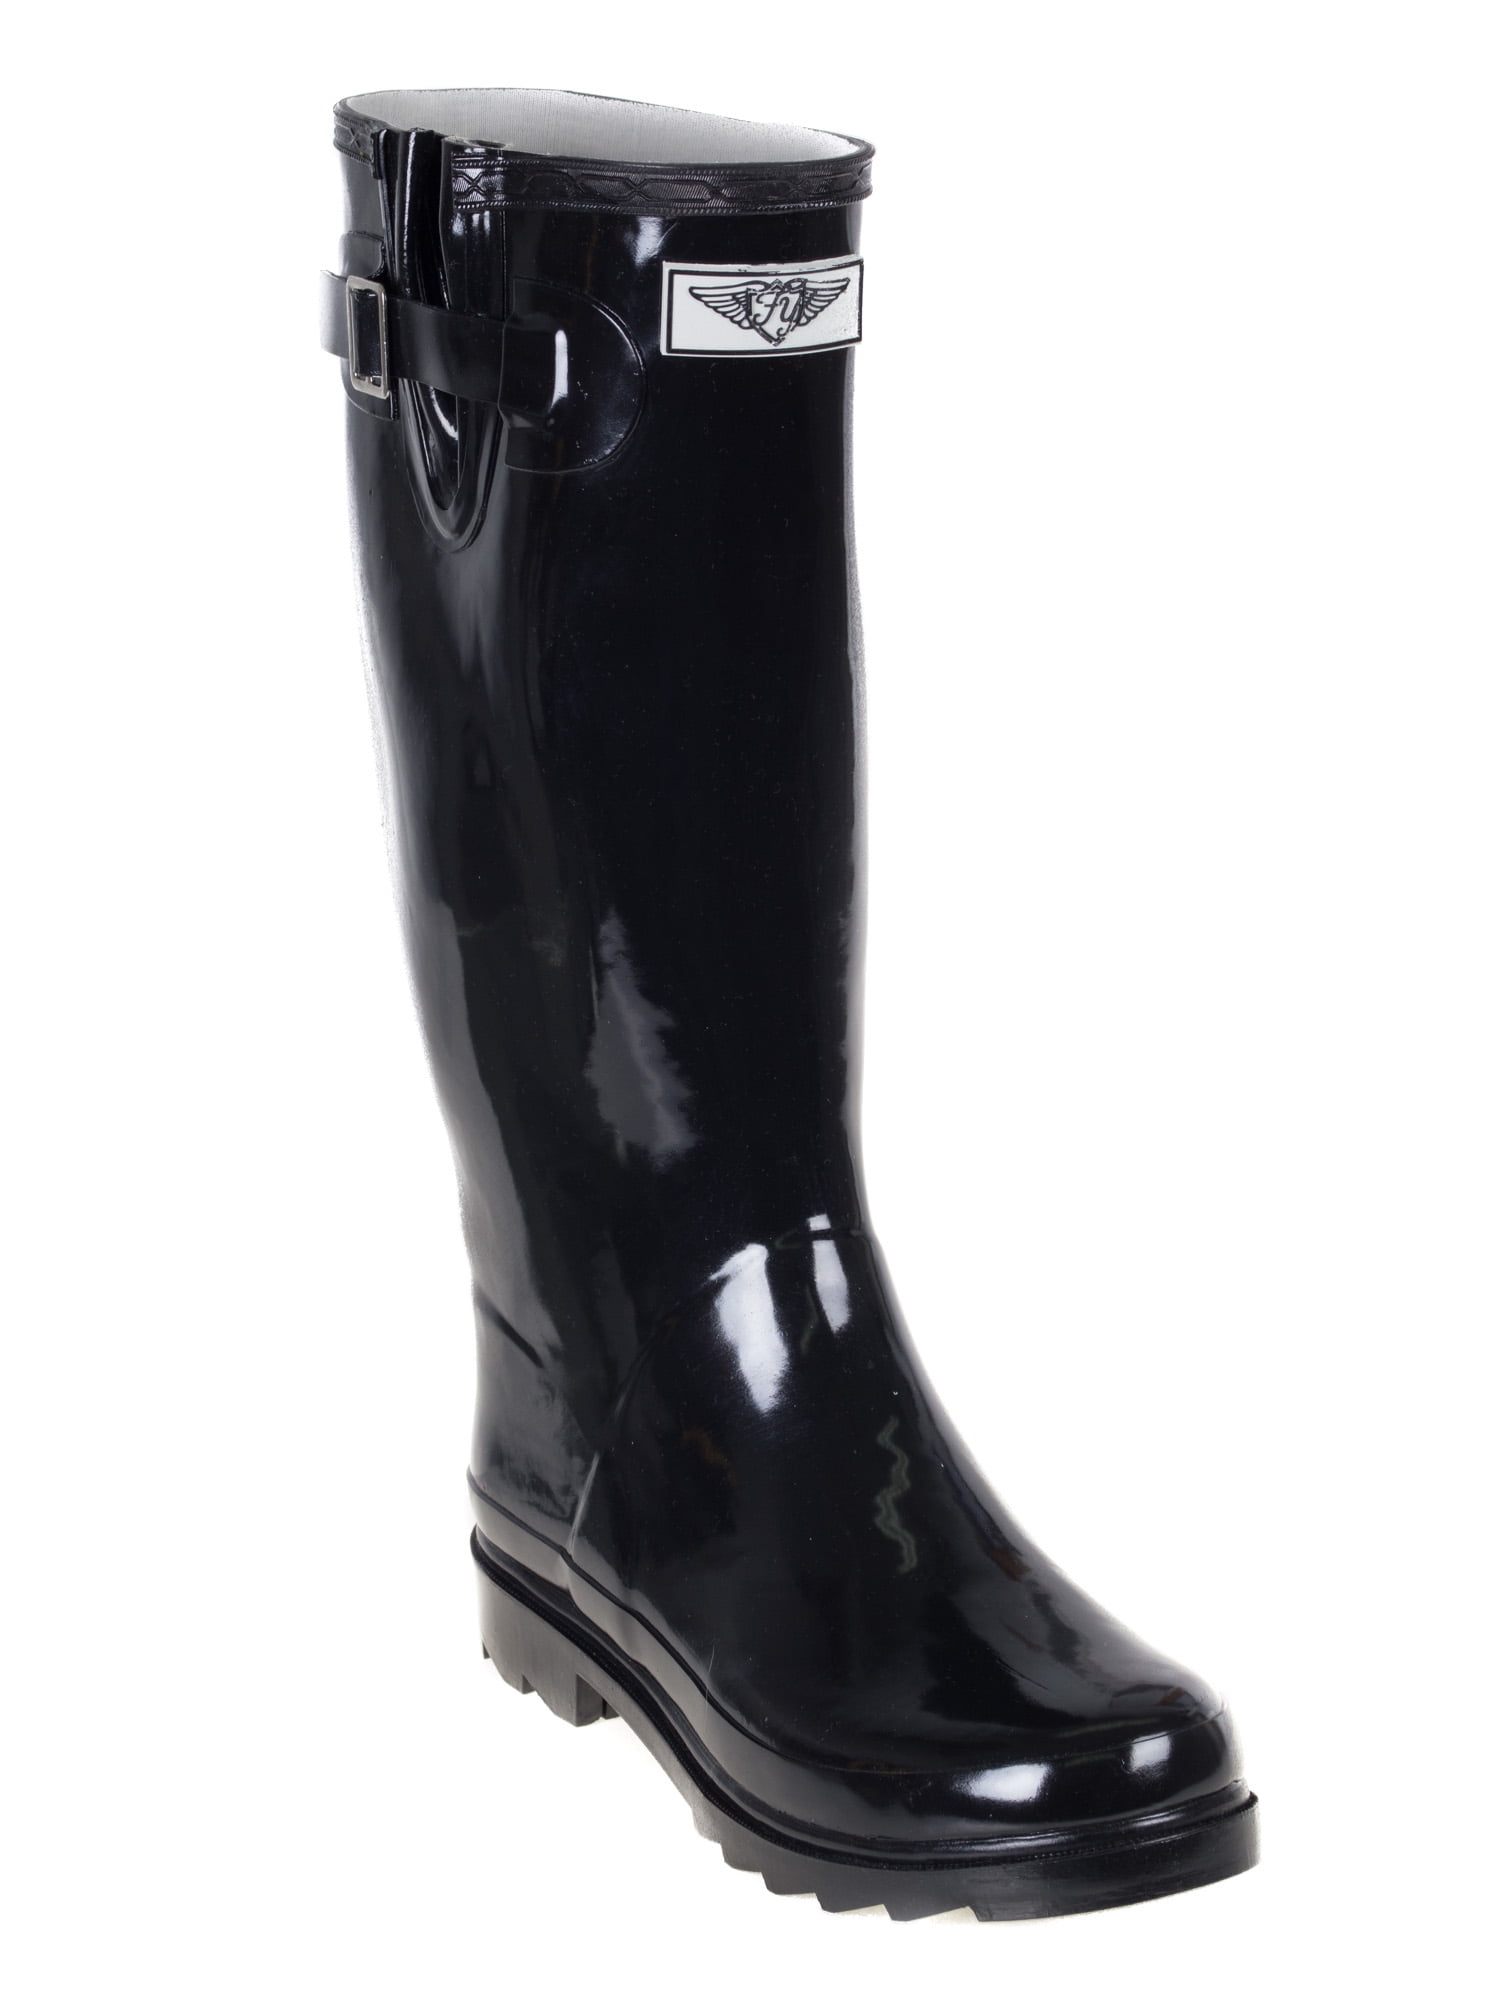 classic rain boots